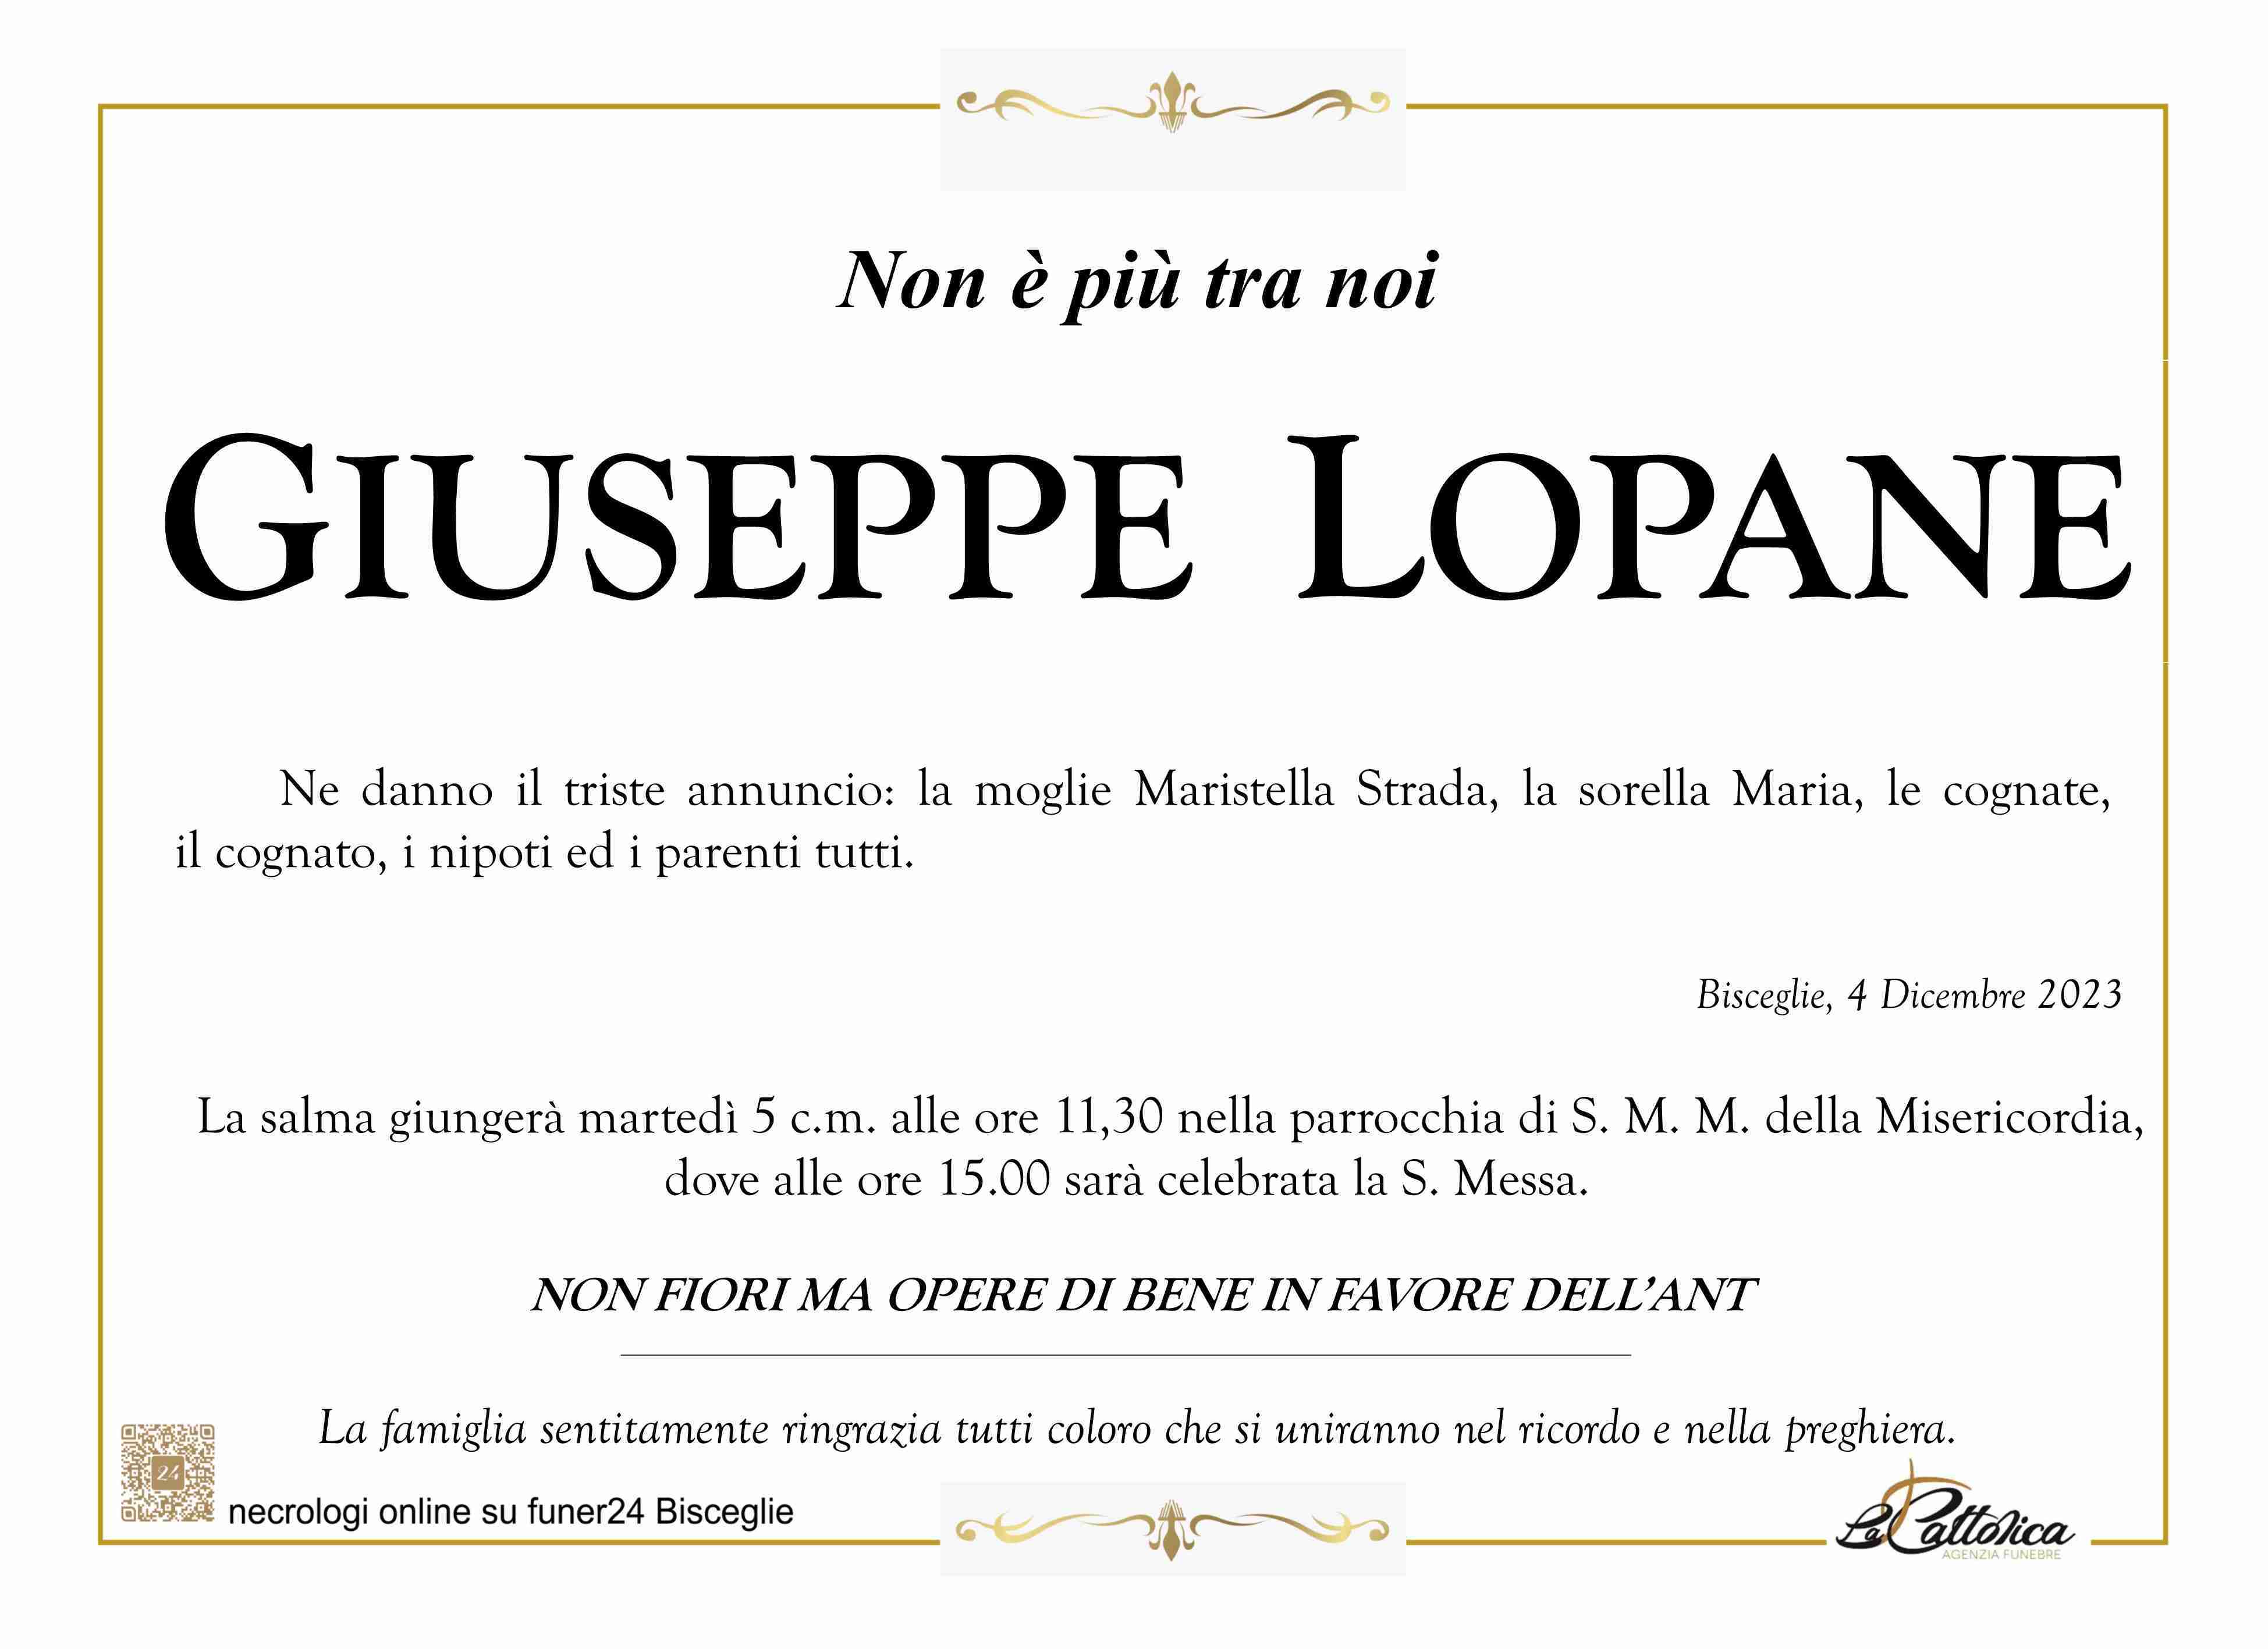 Giuseppe Lopane